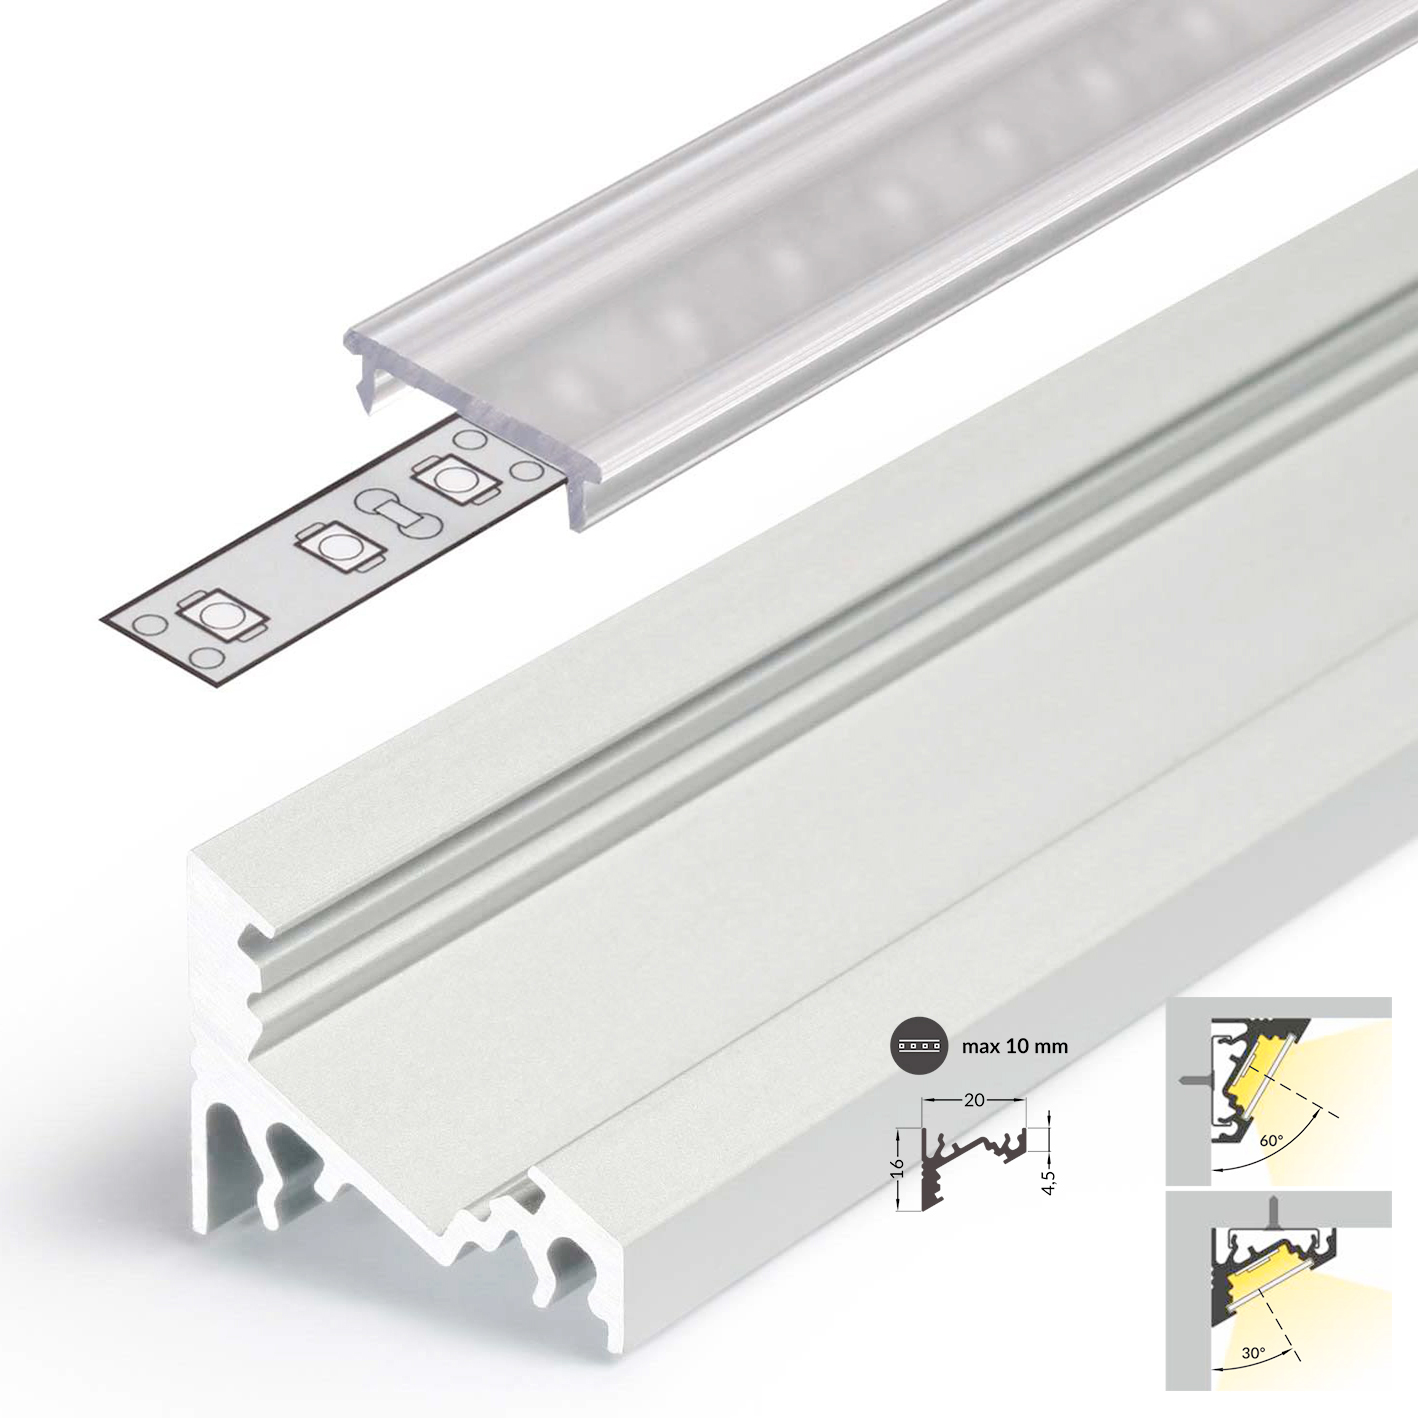 LEDsikon® LED Aluminium Profil Eckprofil Set CORNER 10mm 2m inkl Blende 